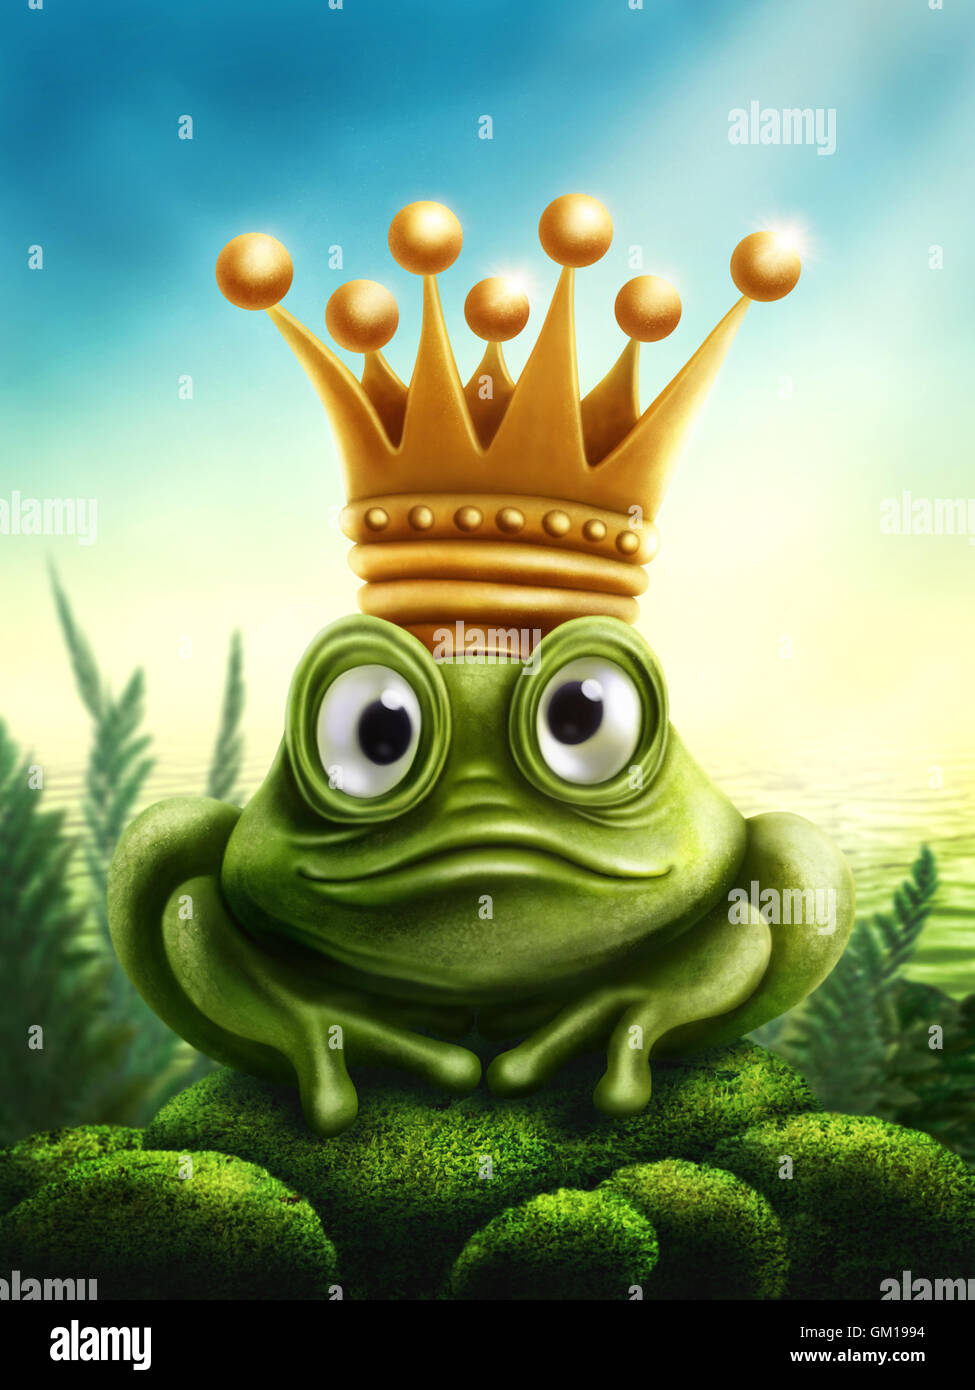 Illustration de frog prince avec couronne d'or Banque D'Images